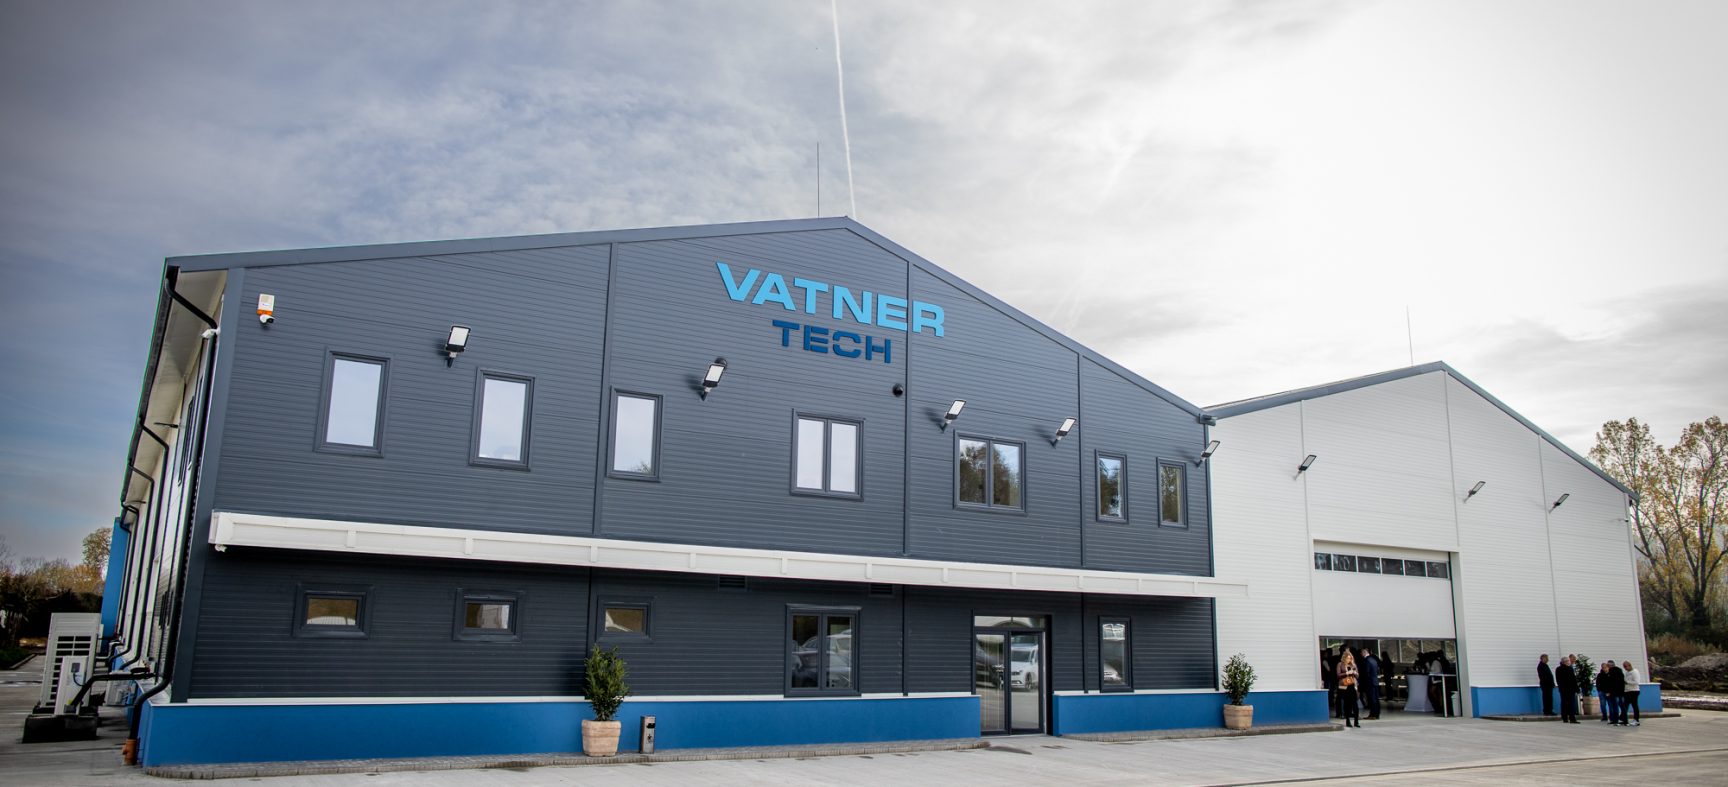 Átadtuk a Vatner Tech paneltechnológiai gyárunkat!